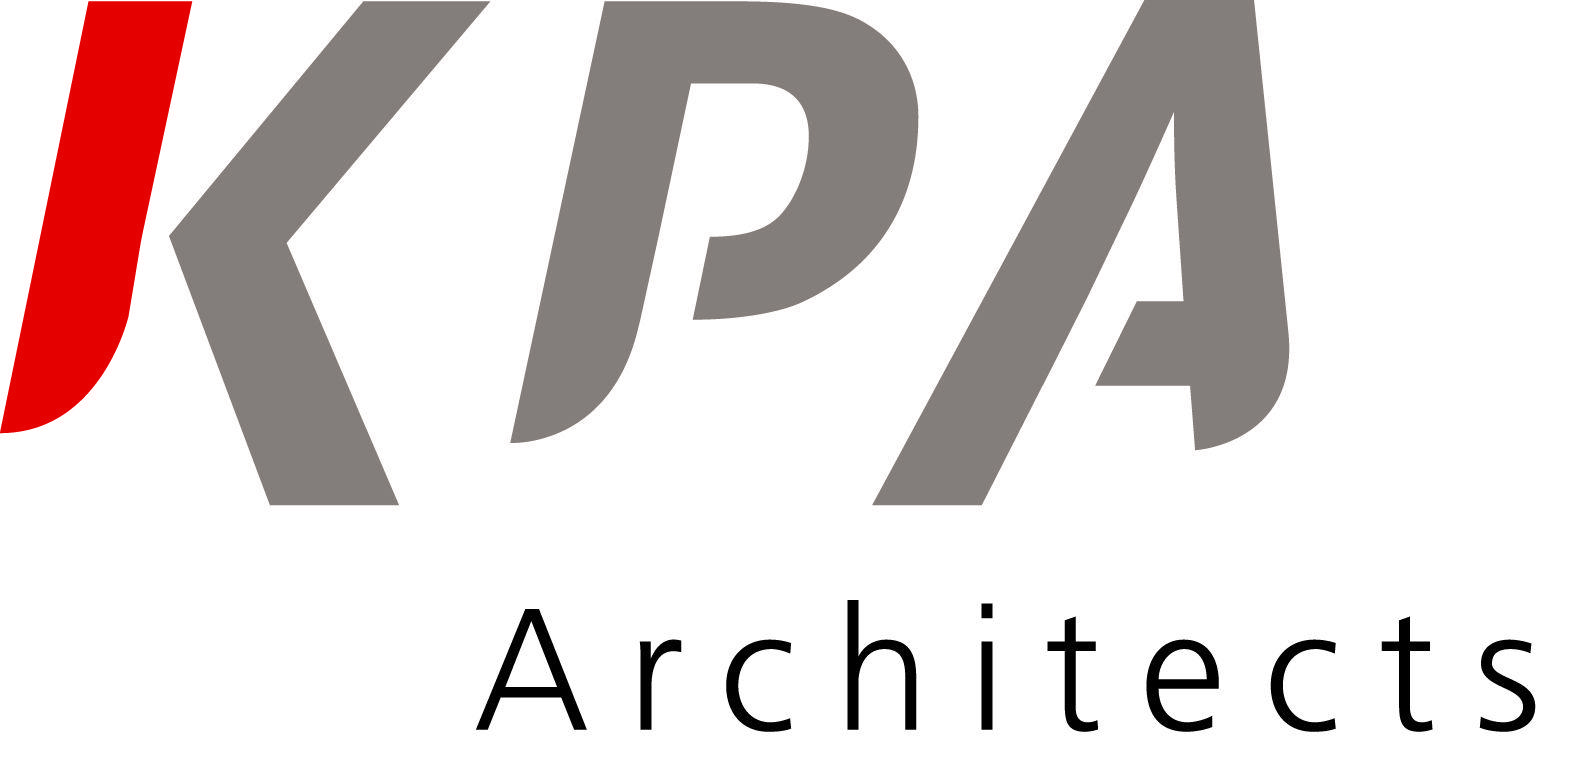 Kpa Logo - KPA Architects - LASA National